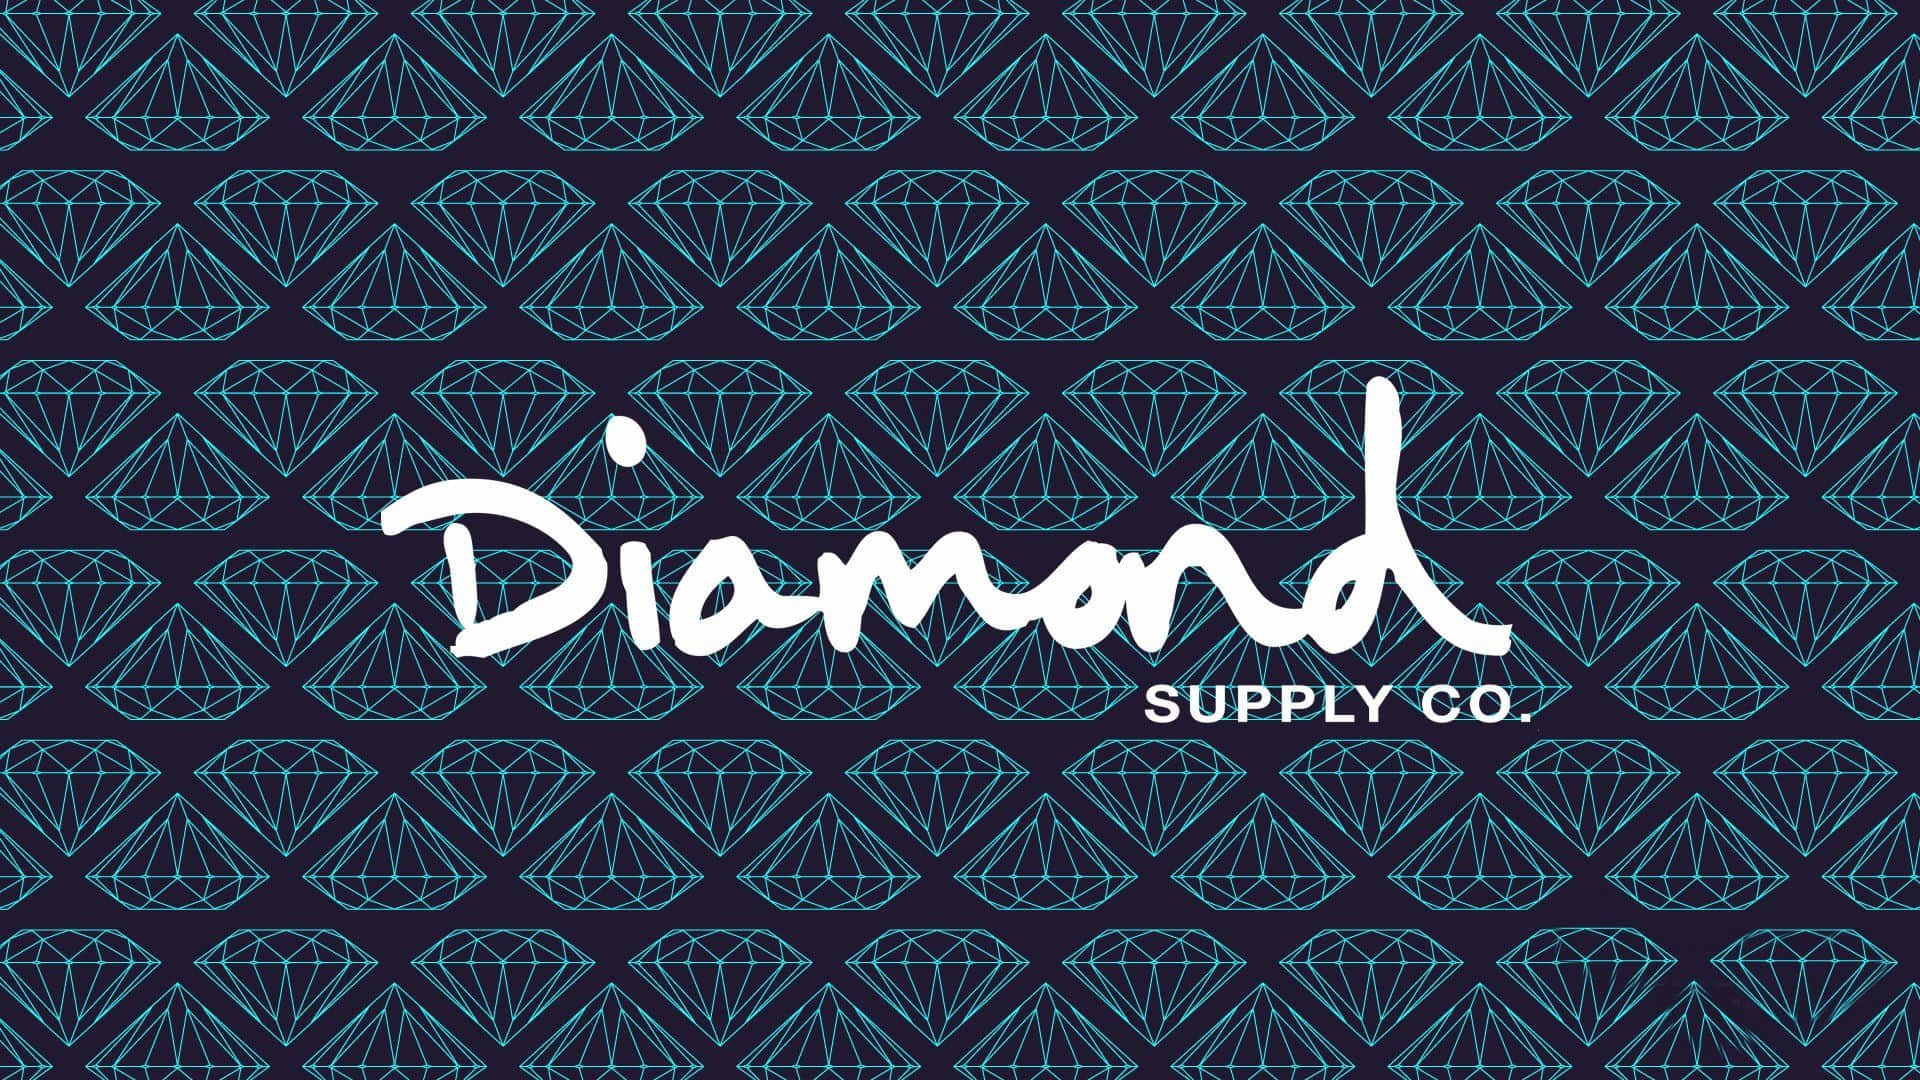 Imagemdo Logotipo Da Diamond Supply Co. Papel de Parede